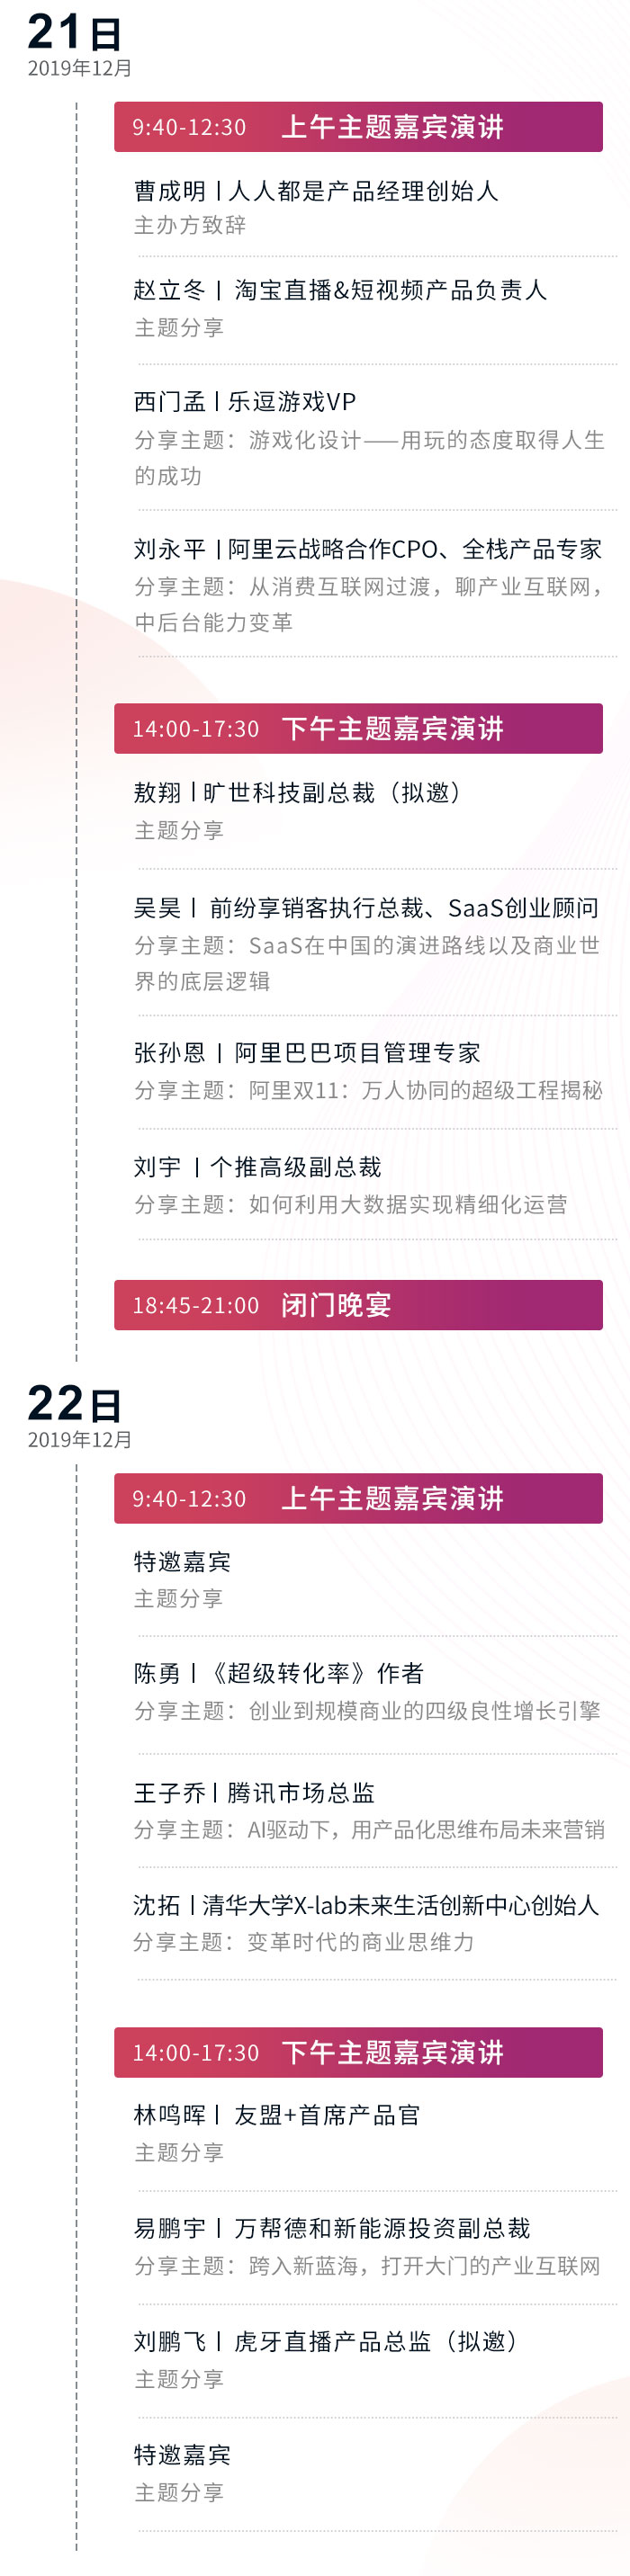 2019产品经理大会（12月深圳）